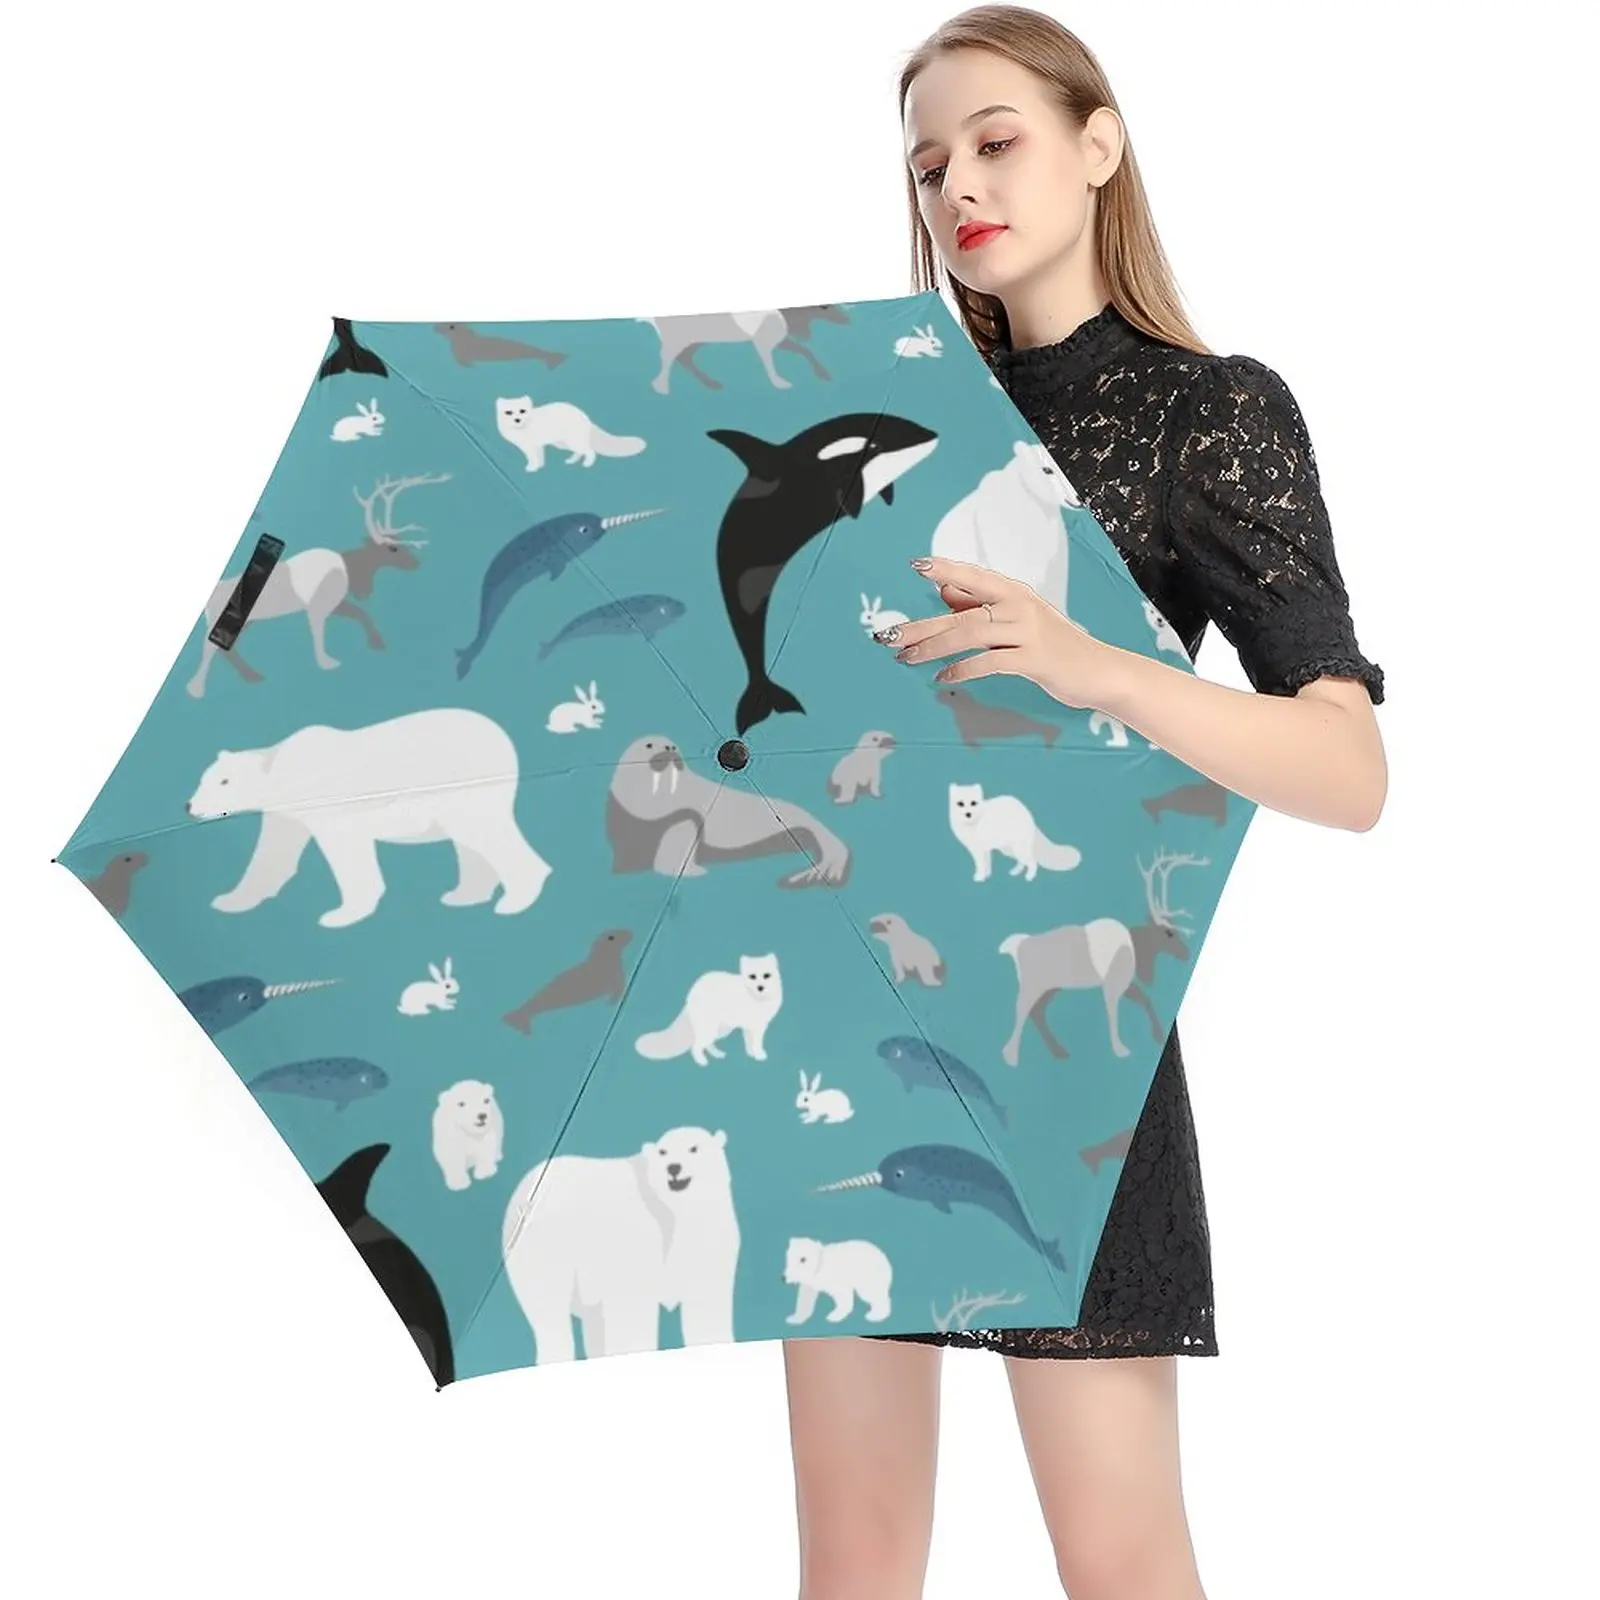 

Arctic Animal Print 5 Fold 6 Ribs Umbrella Polar Bear Mini Pocket Umbrella Wind Proof Umbrellas for Men Women